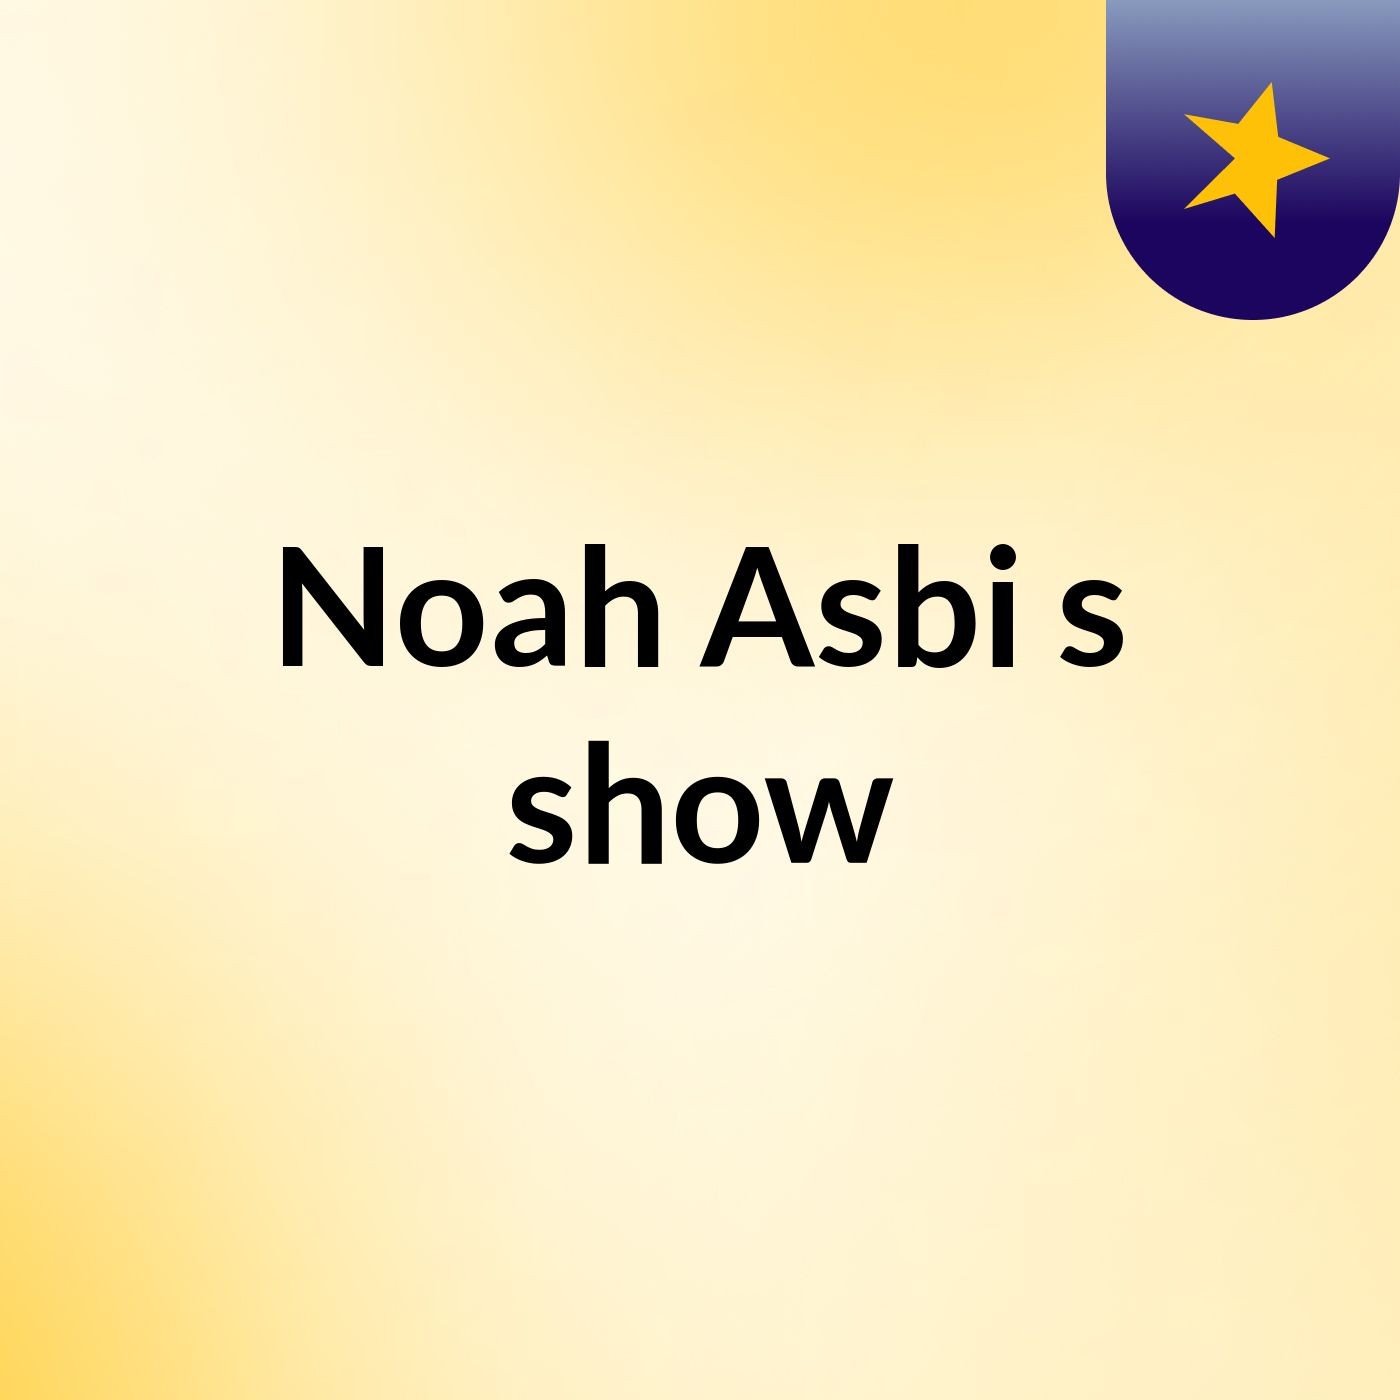 Noah Asbi's show